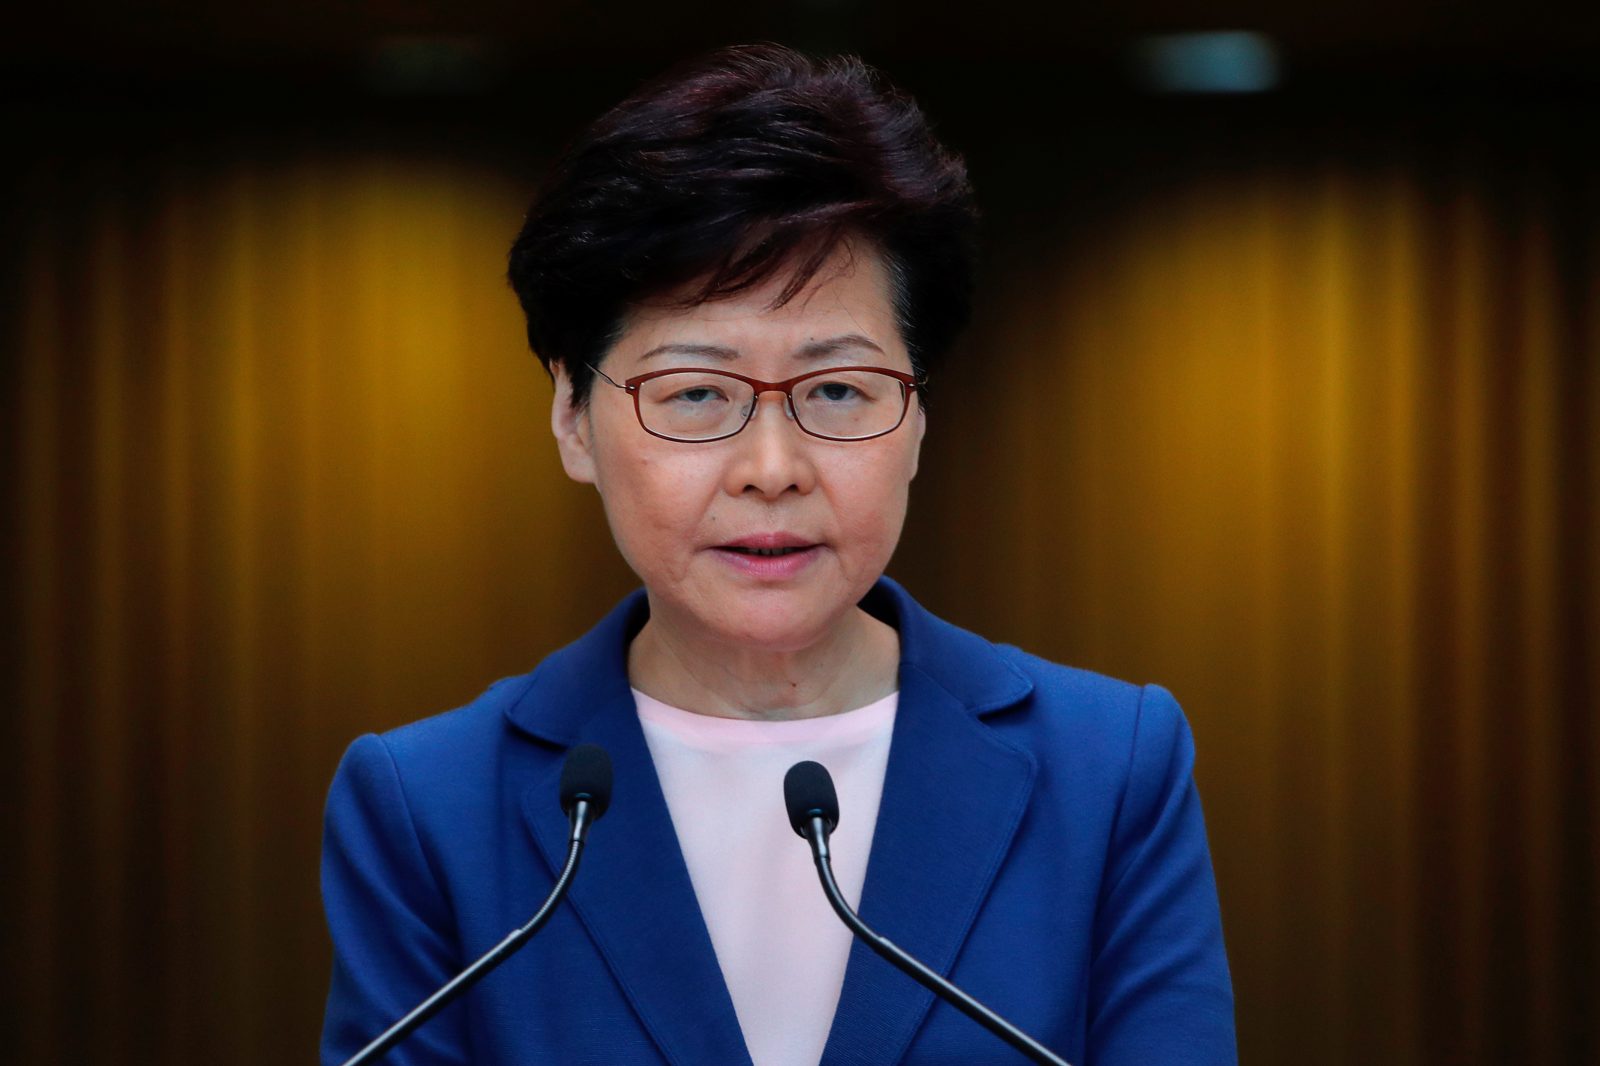 Správkyně Hongkongu Lamová nebude znovu kandidovat. Volby správce proběhnou v květnu